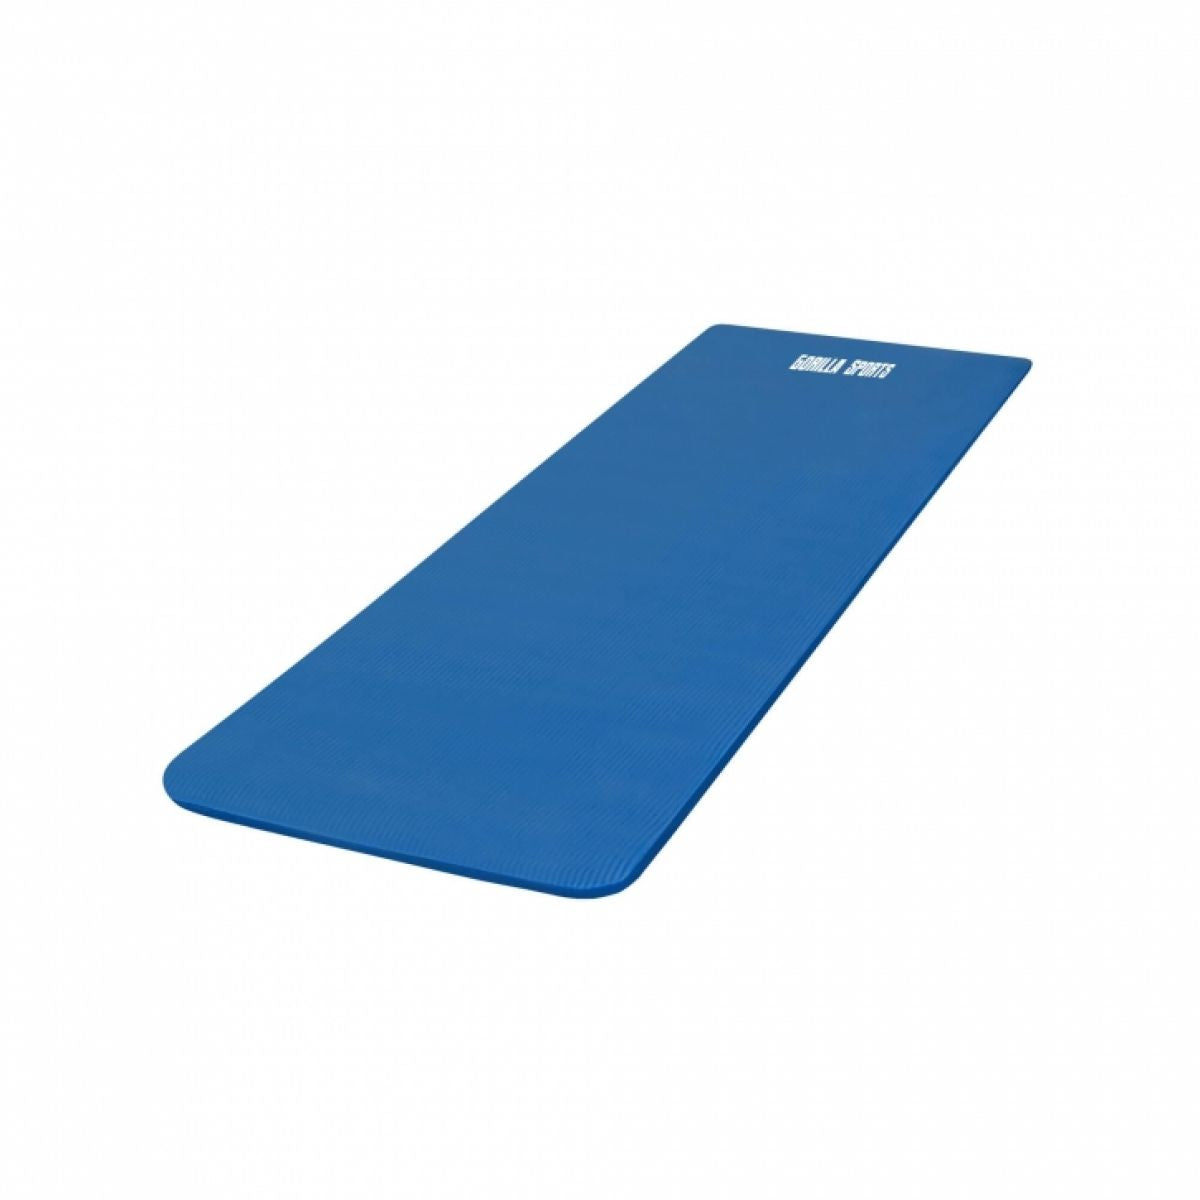 Royal Blue - Yogamat Deluxe 190 x 100 x 1,5 cm